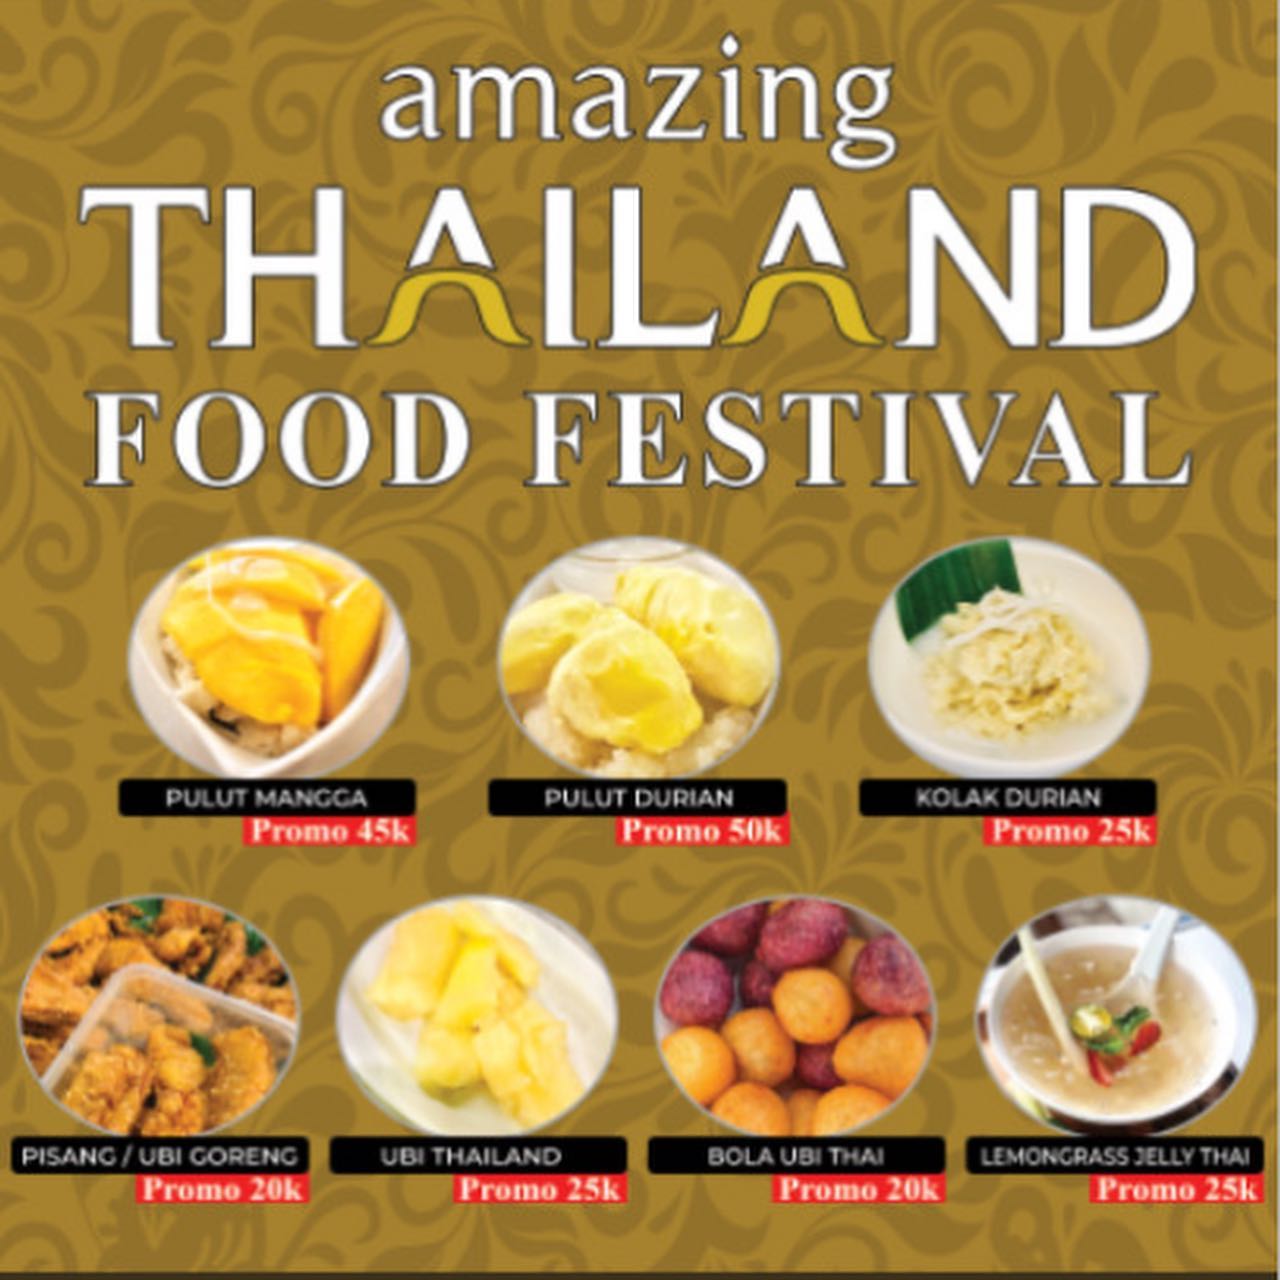 Amazing Thailand Food Festival Kinley Rame Rame di Sun Plaza Main Lobby

Yuk jangan lewatkan ada promo dan 50% CASH BACK dengan Gopay

Khusus 17-21 Aug 2022